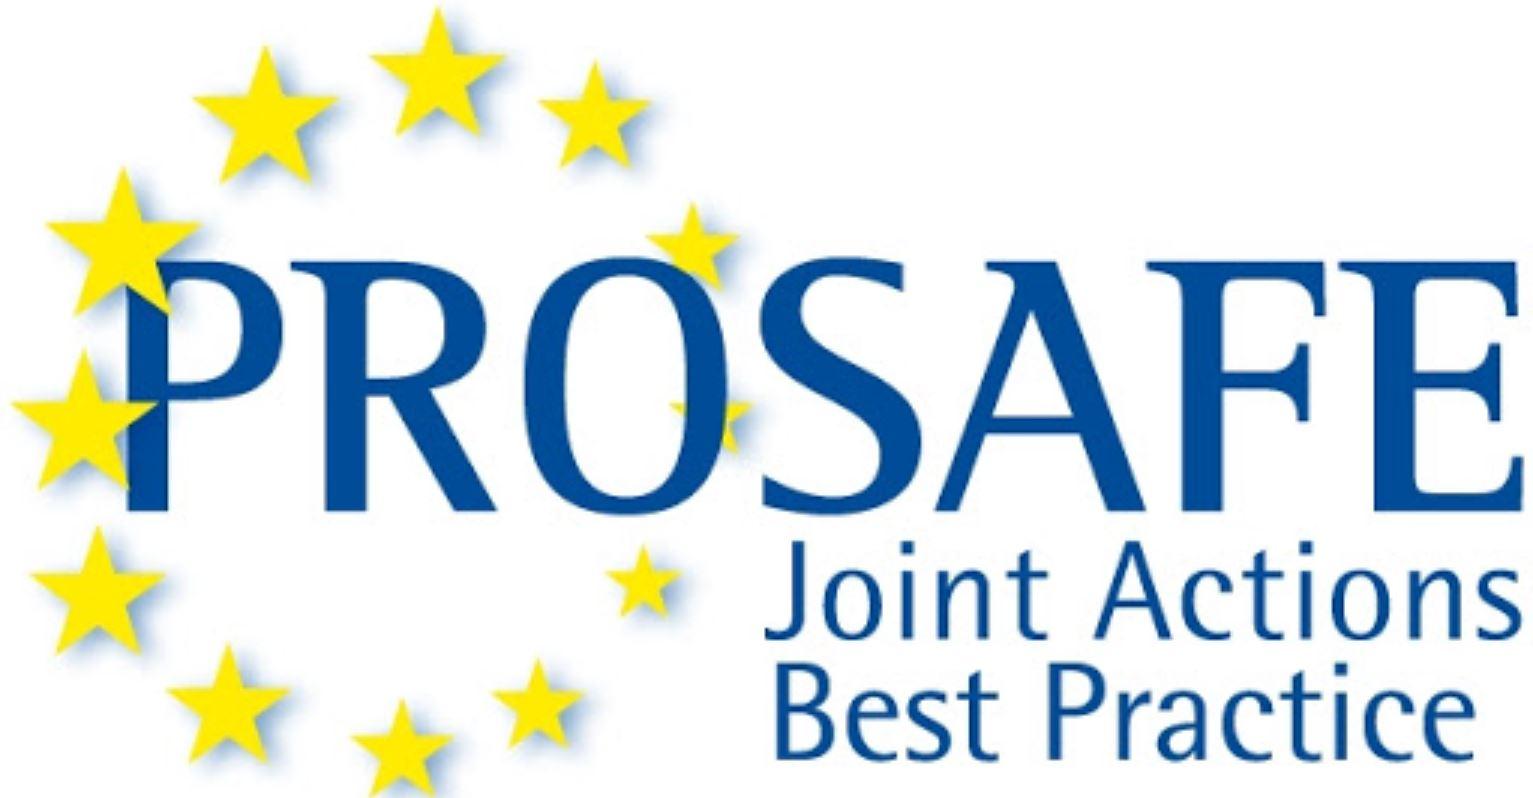 ProSafe logo